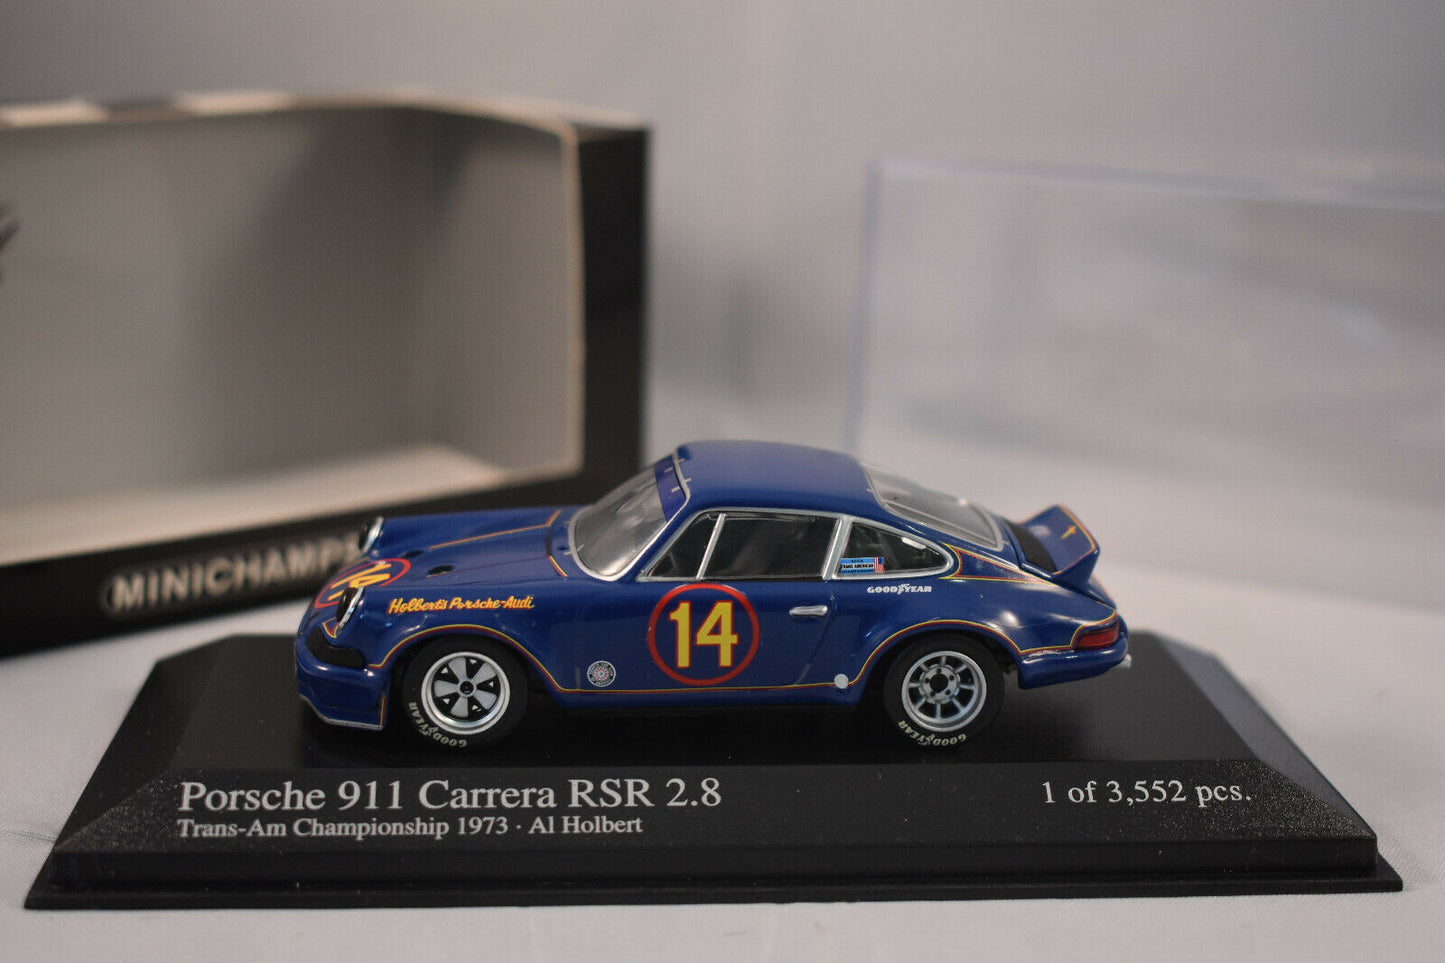 Minichamps 1:43 Porsche 911 Carrera RSR 2.8 - Al Holbert - #14 Team Holbert Porsche/Audi Trans-Am Series 1973 430736914